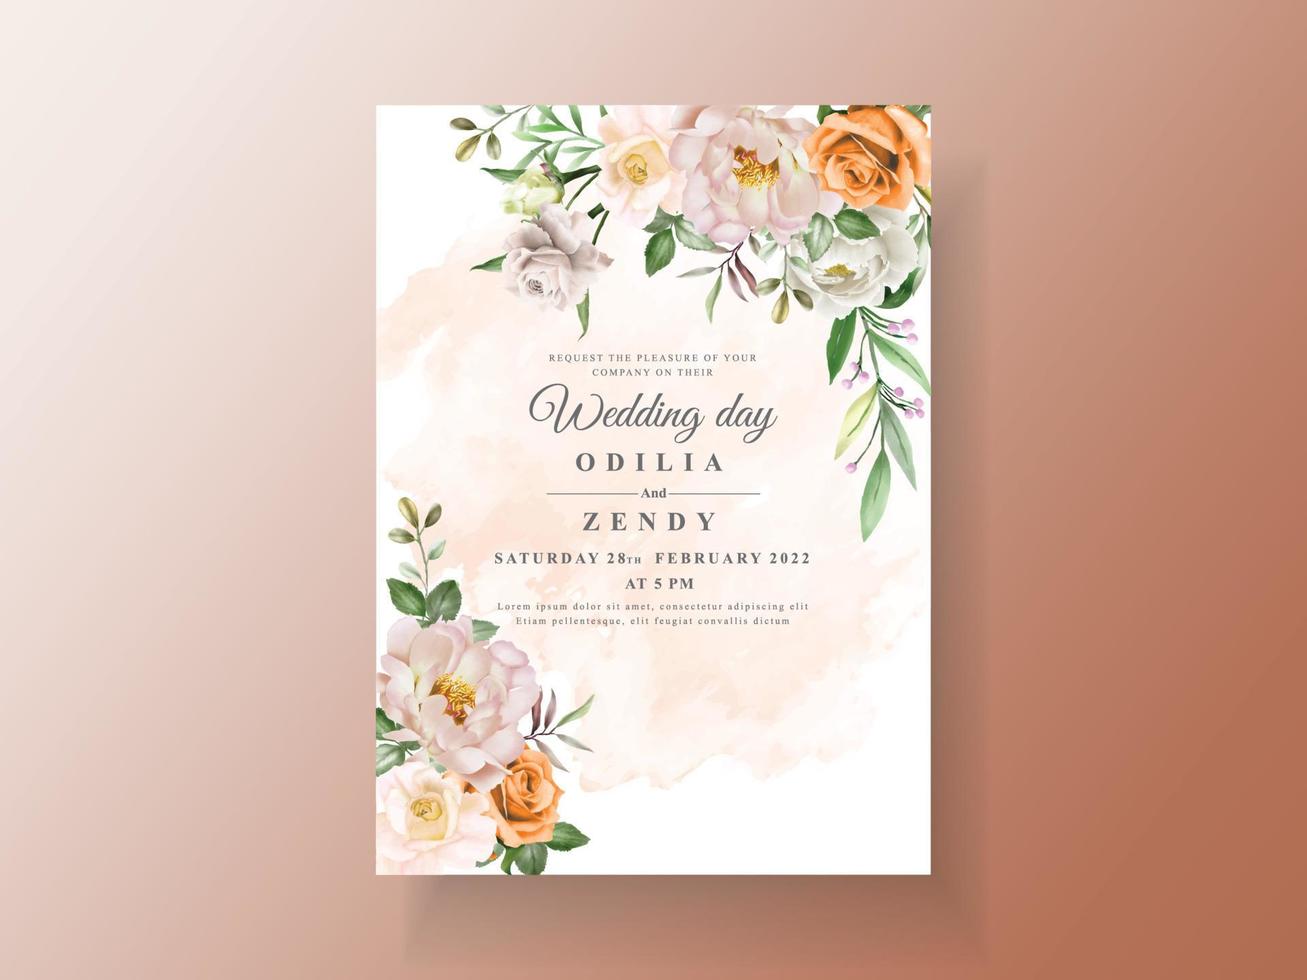 hermosa tarjeta de invitación de boda con elegante flor y hojas de acuarela vector